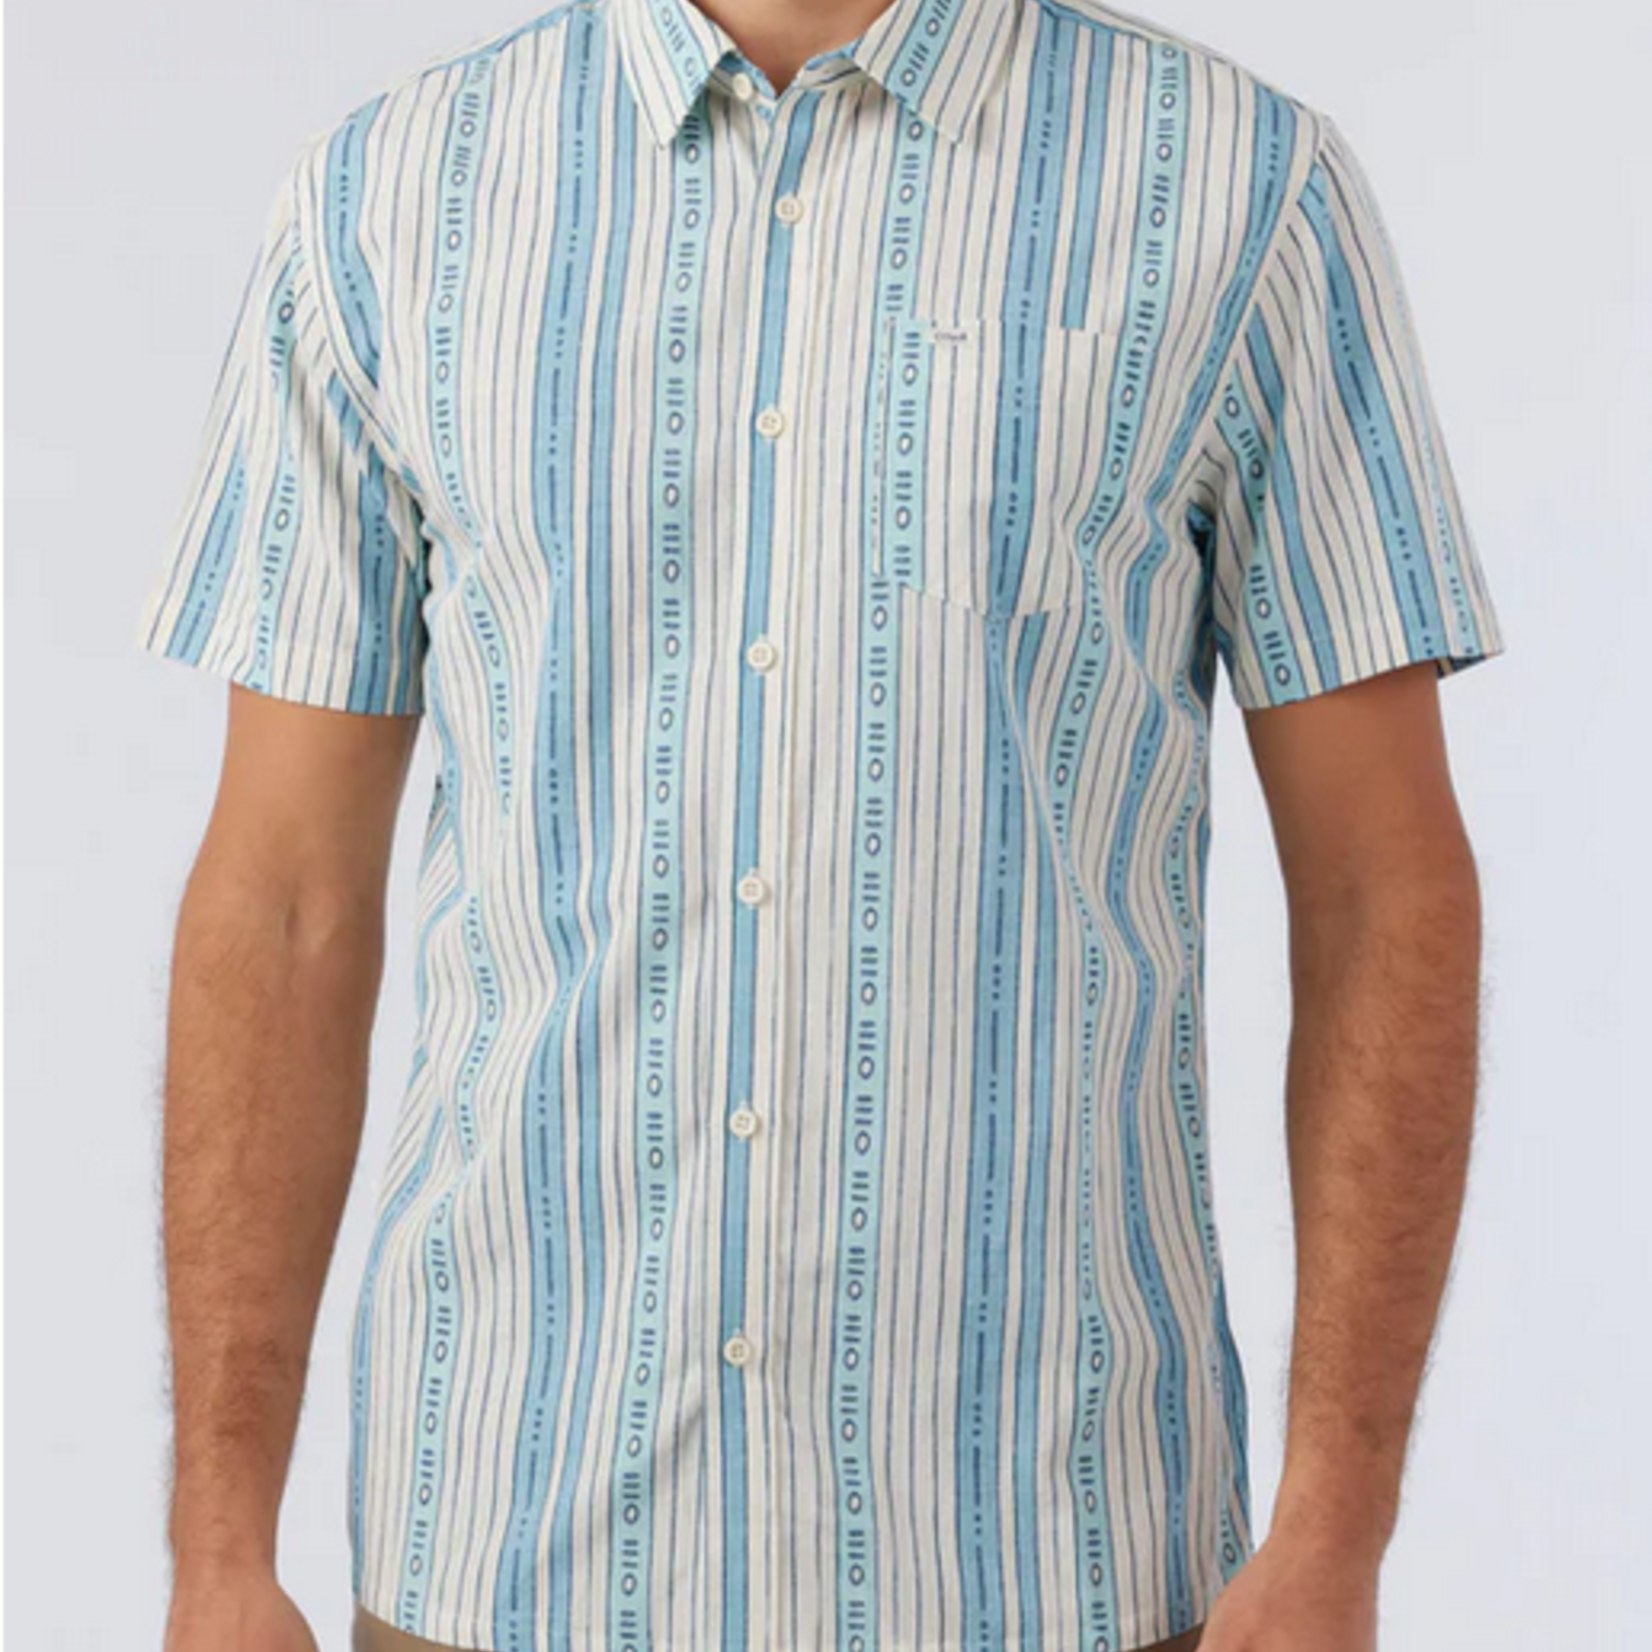 O'NEILL Men's O'neill OG Eco Stripe Ss Standard Shirt